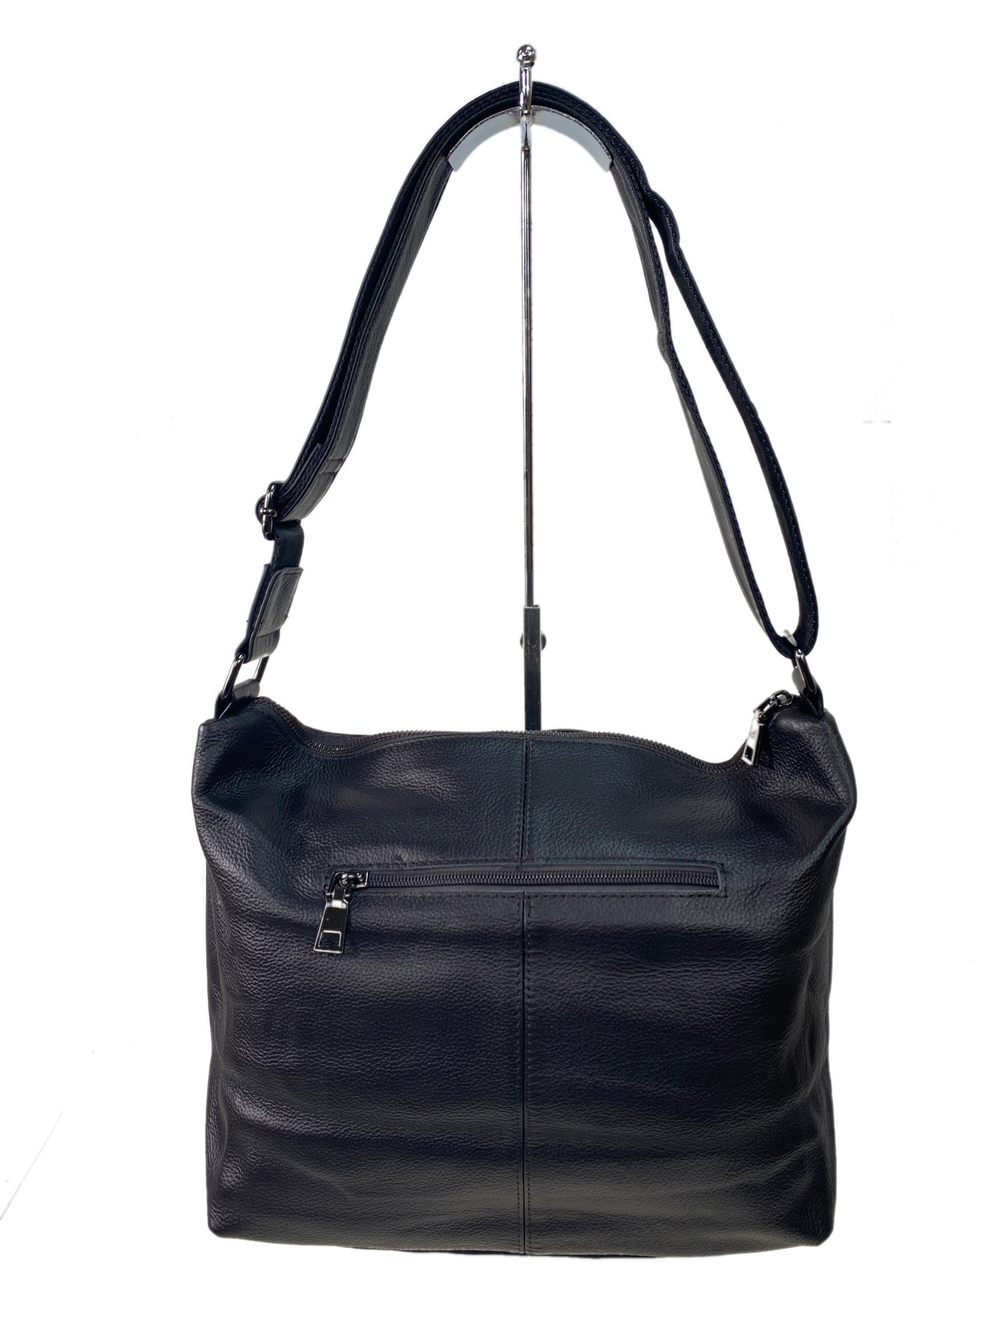 Женская сумка из натуральной кожи, цвет темно-коричневый